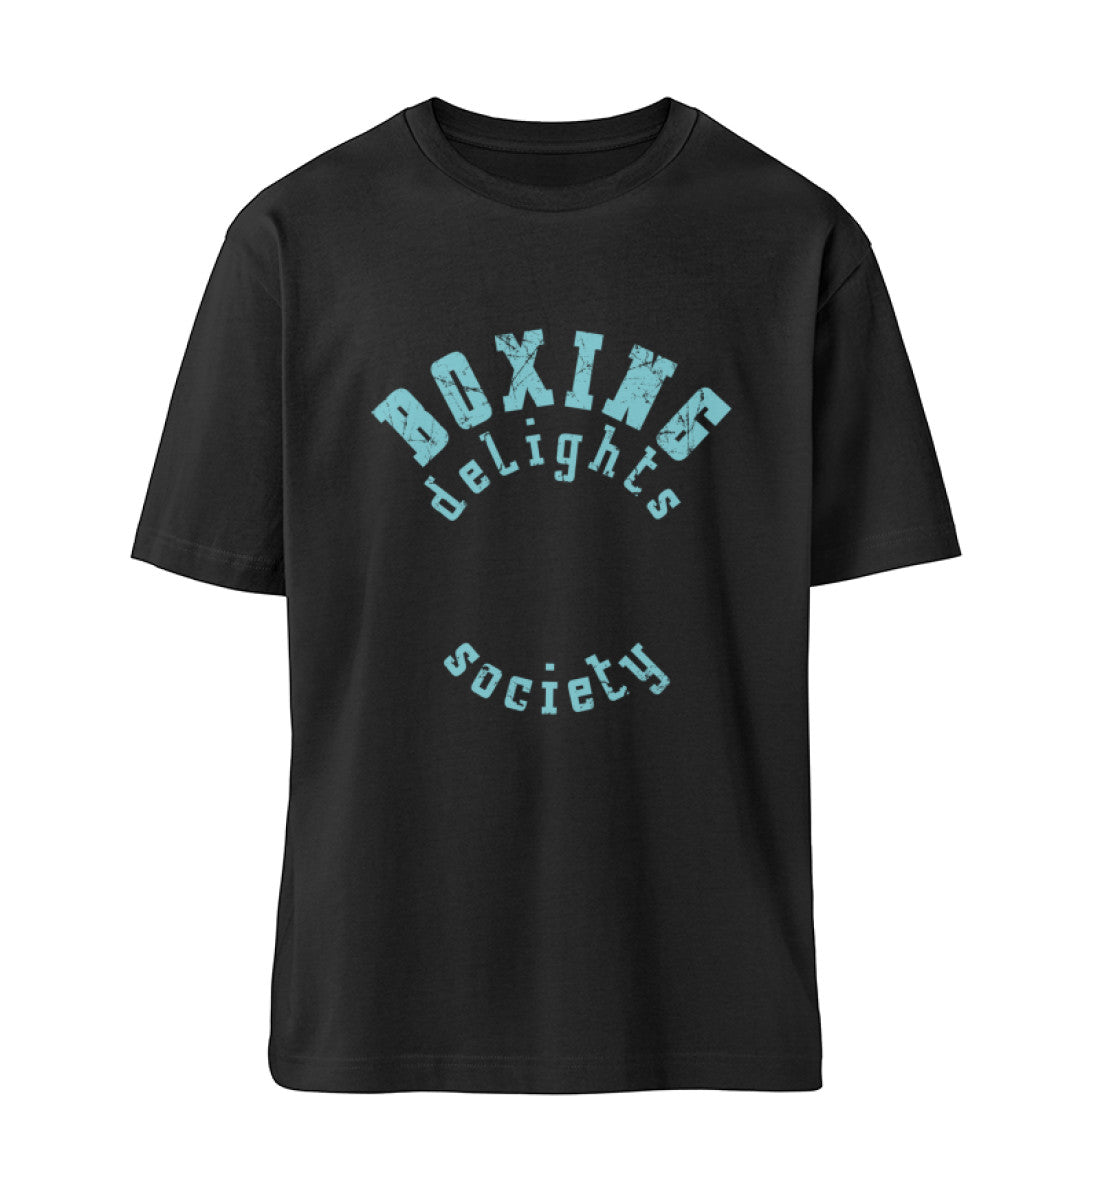 Schwarzes T-Shirt Unisex Relaxed Fit für Frauen und Männer bedruckt mit dem Design der Roger Rockawoo Clothing Kollektion Boxing delights society